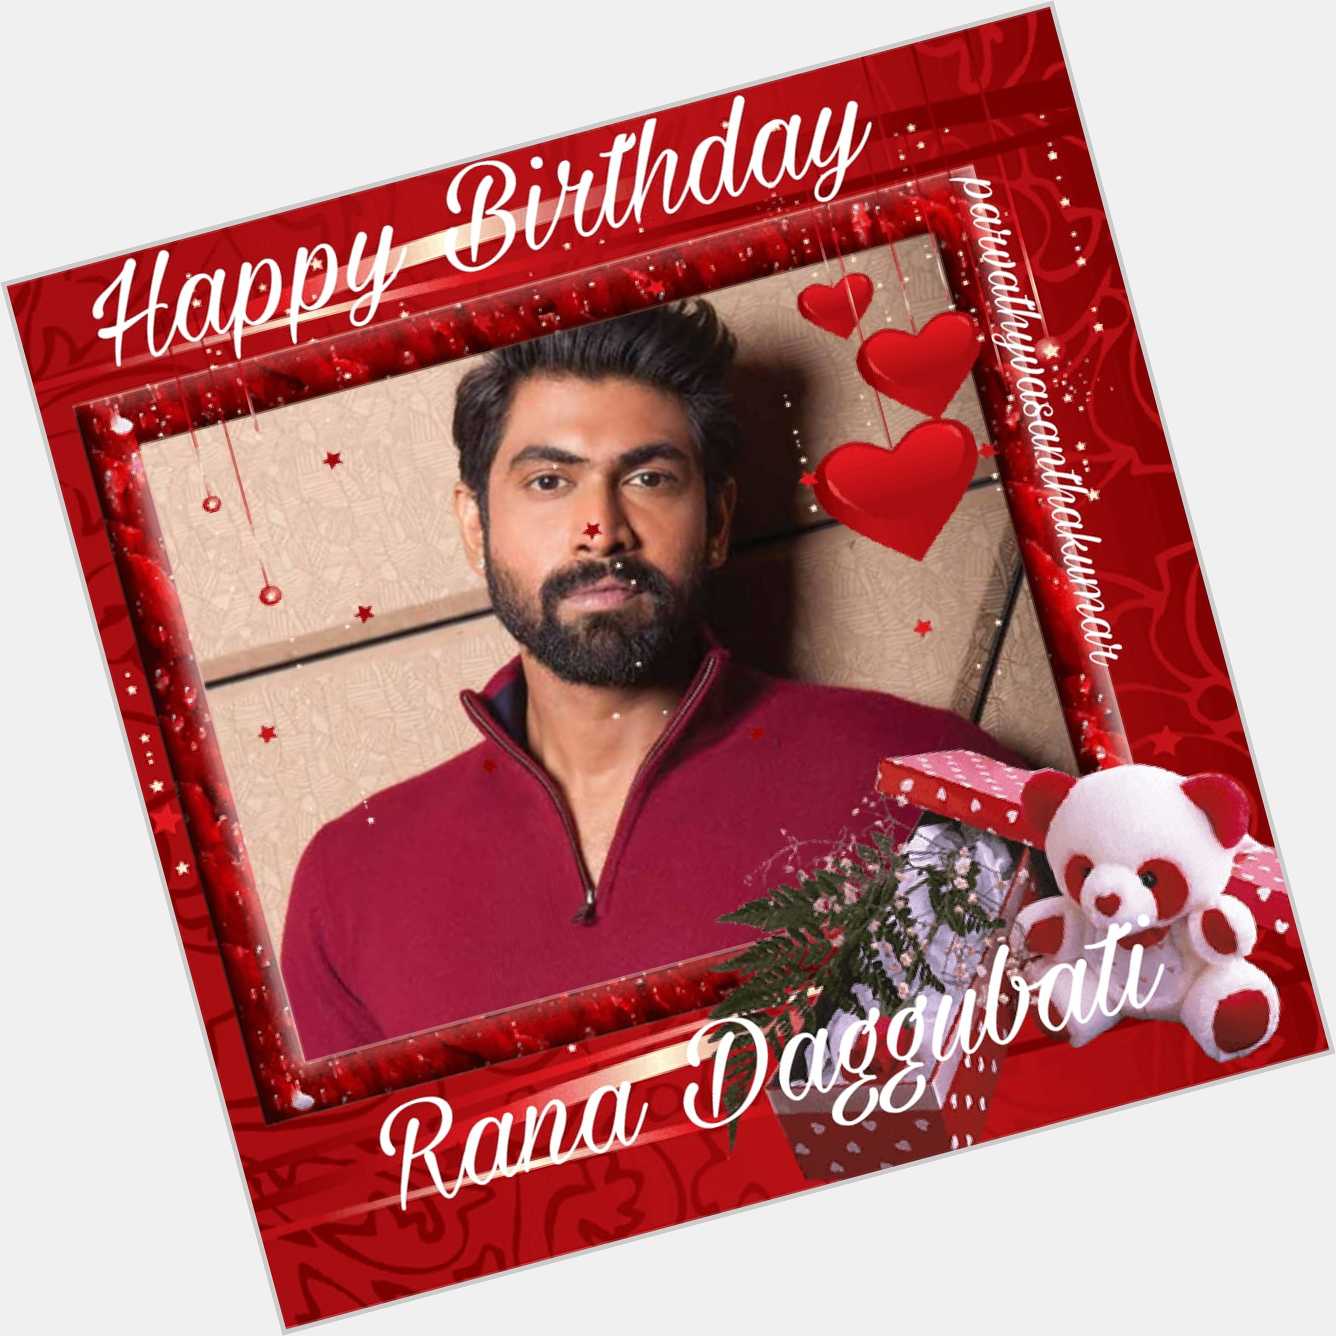 Happy birthday
Rana daggubati   